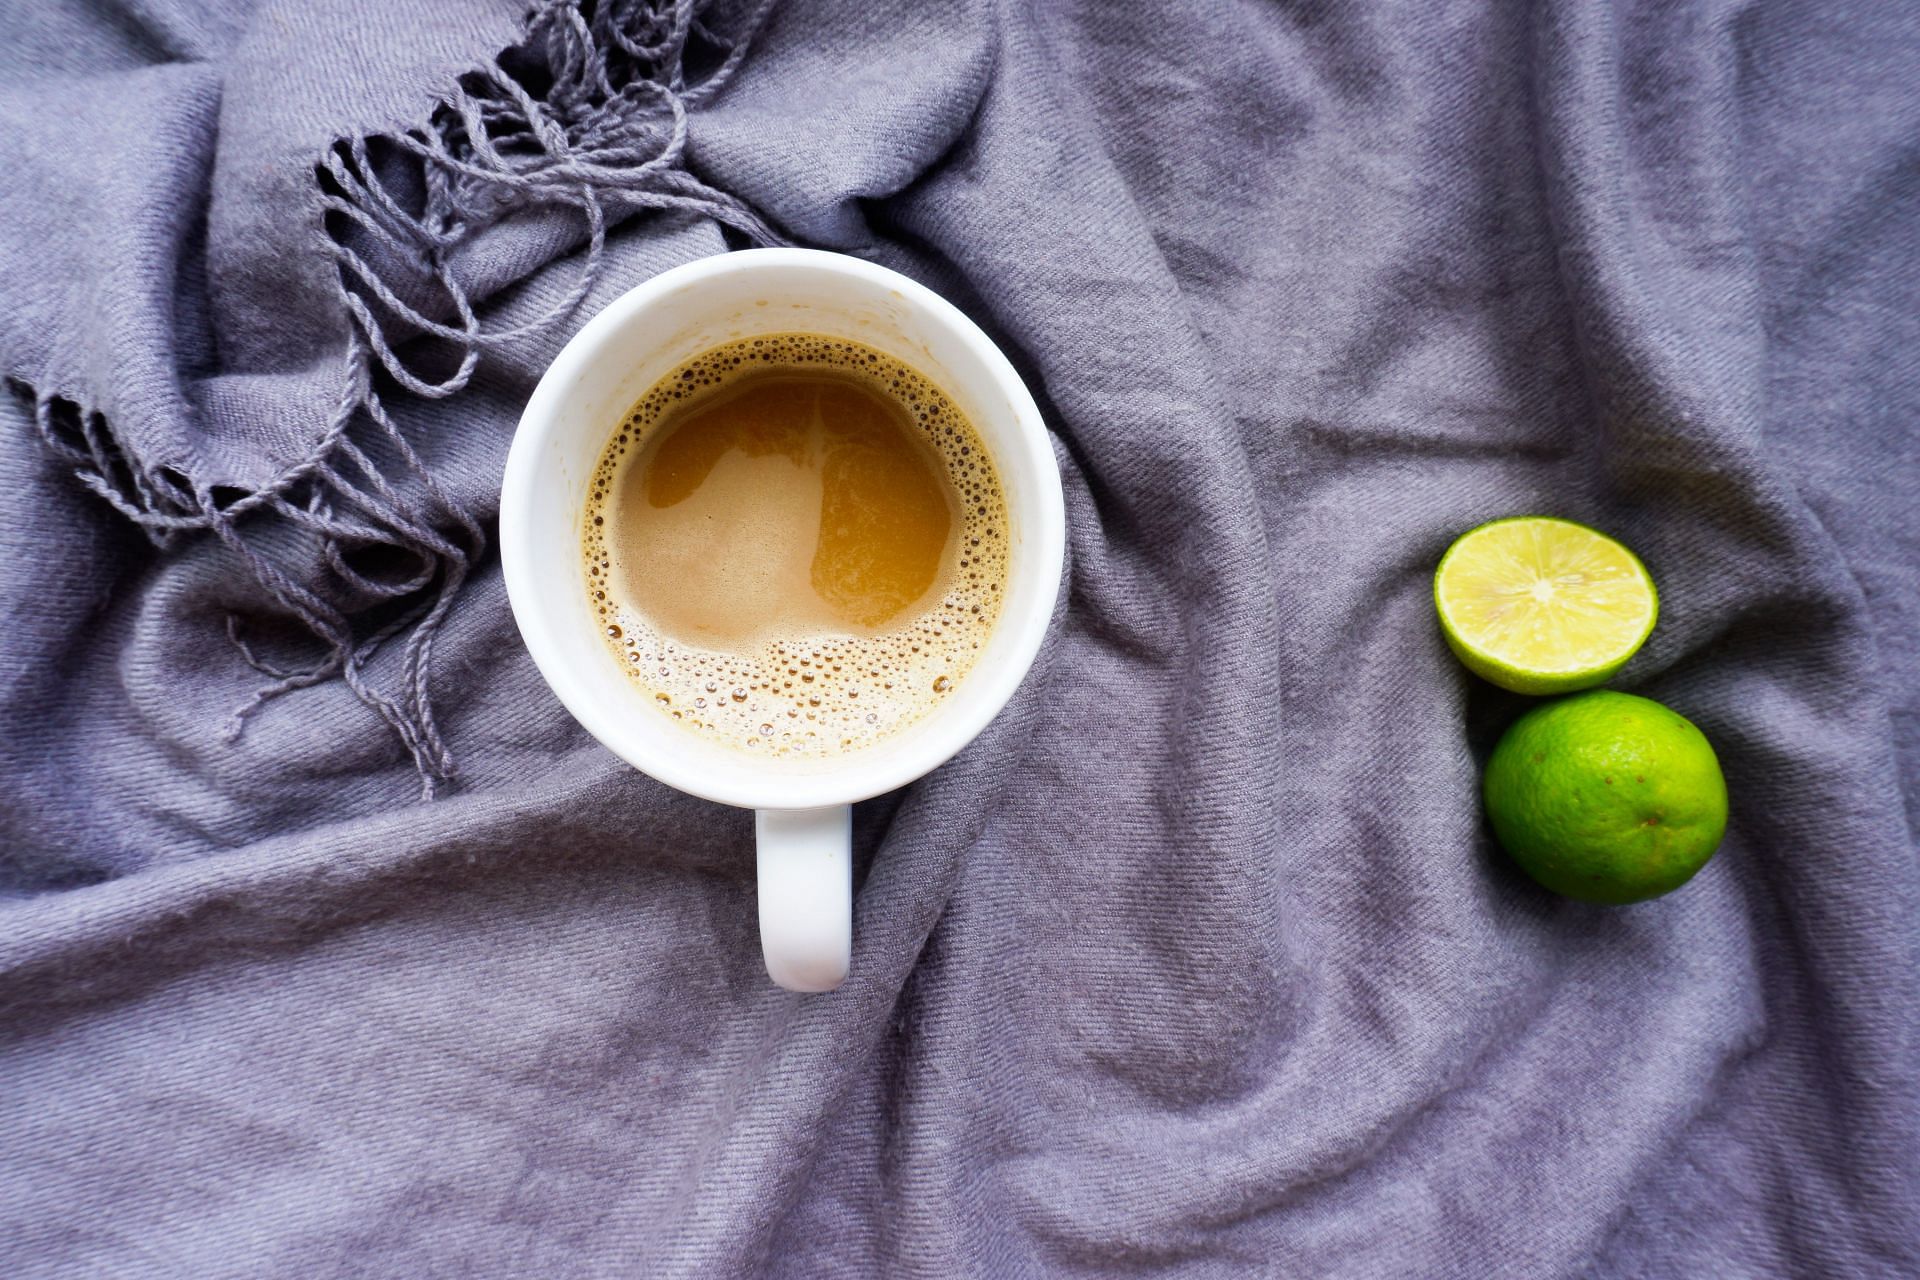 A hot cup of caffeinated drink. (Image via Unsplash/ Leohoho)